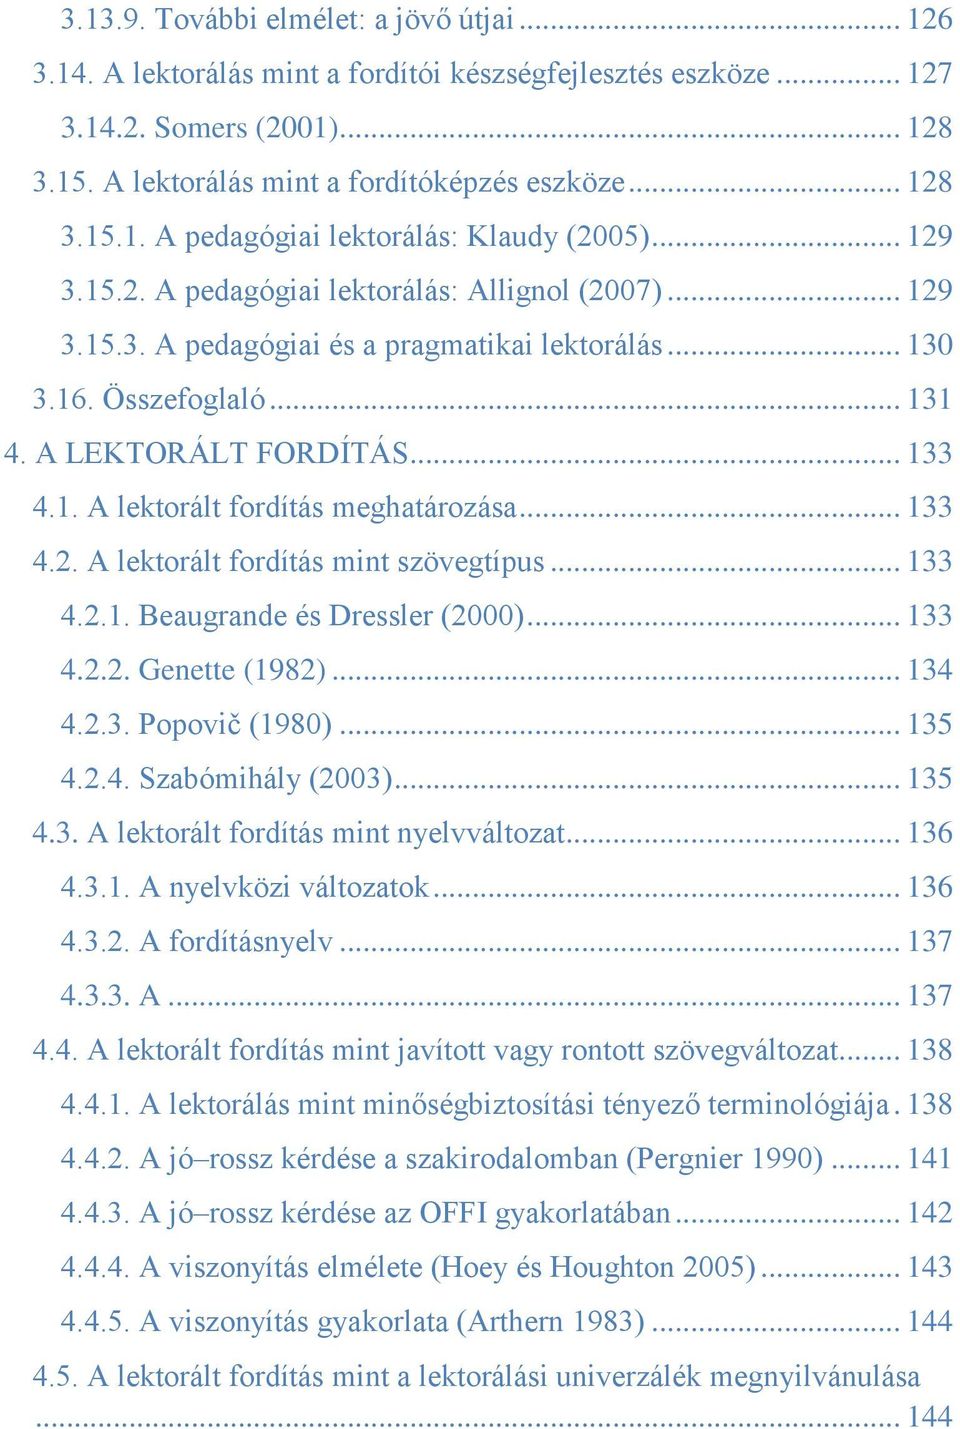 .. 133 4.2. A lektorált fordítás mint szövegtípus... 133 4.2.1. Beaugrande és Dressler (2000)... 133 4.2.2. Genette (1982)... 134 4.2.3. Popovič (1980)... 135 4.2.4. Szabómihály (2003)... 135 4.3. A lektorált fordítás mint nyelvváltozat.